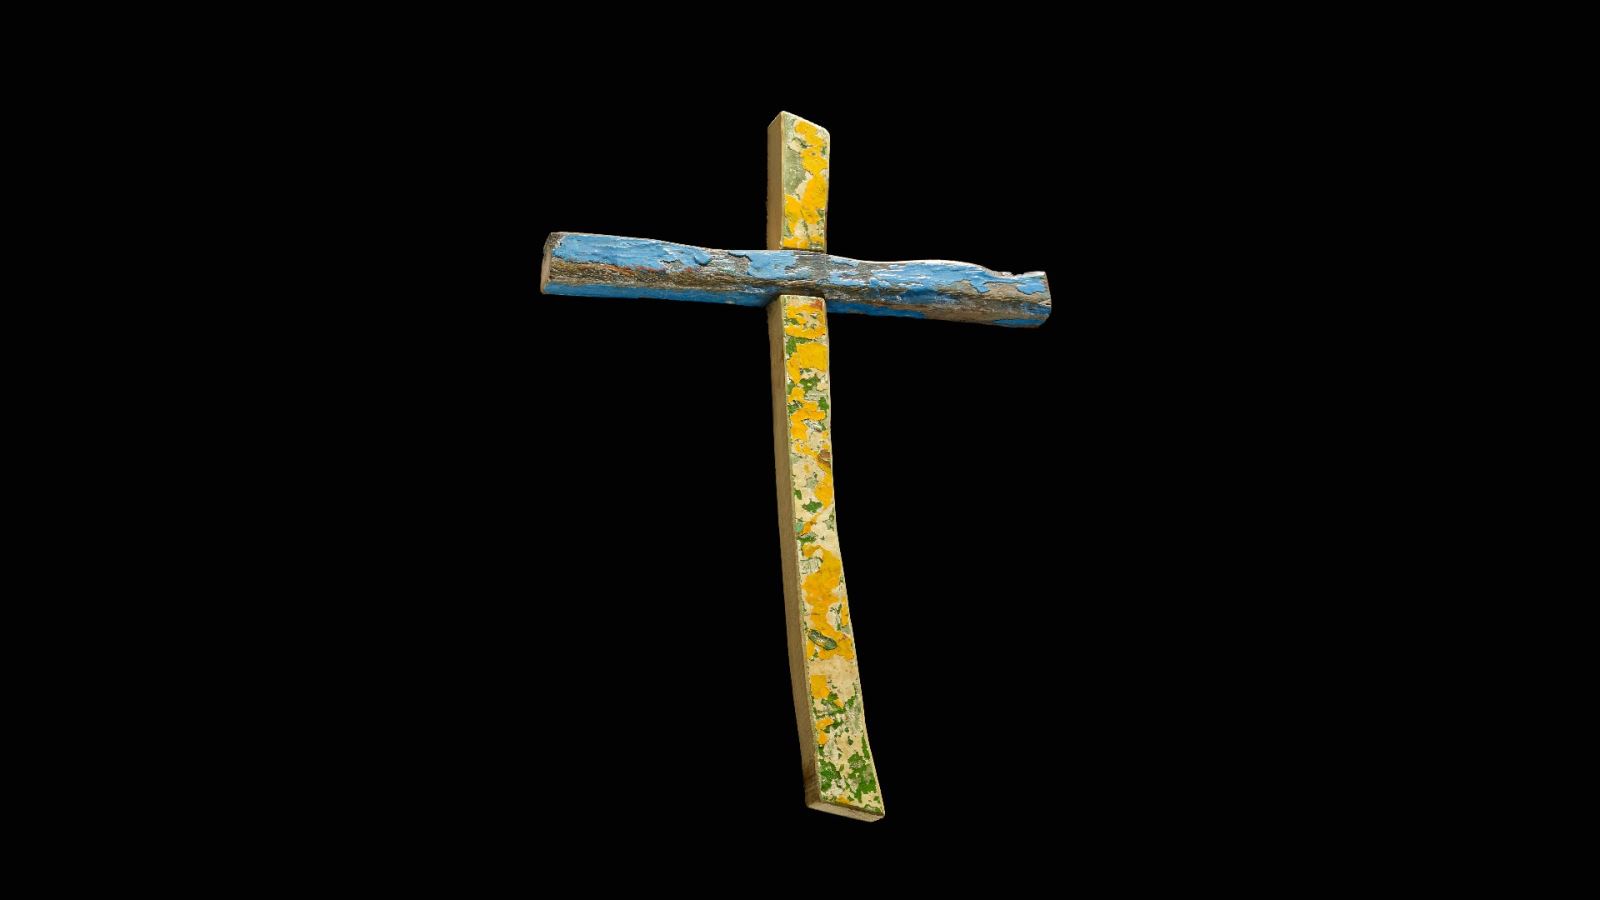 The Lampedusa cross, Francesco Tuccio. Credit: The Trustees of the British Museum